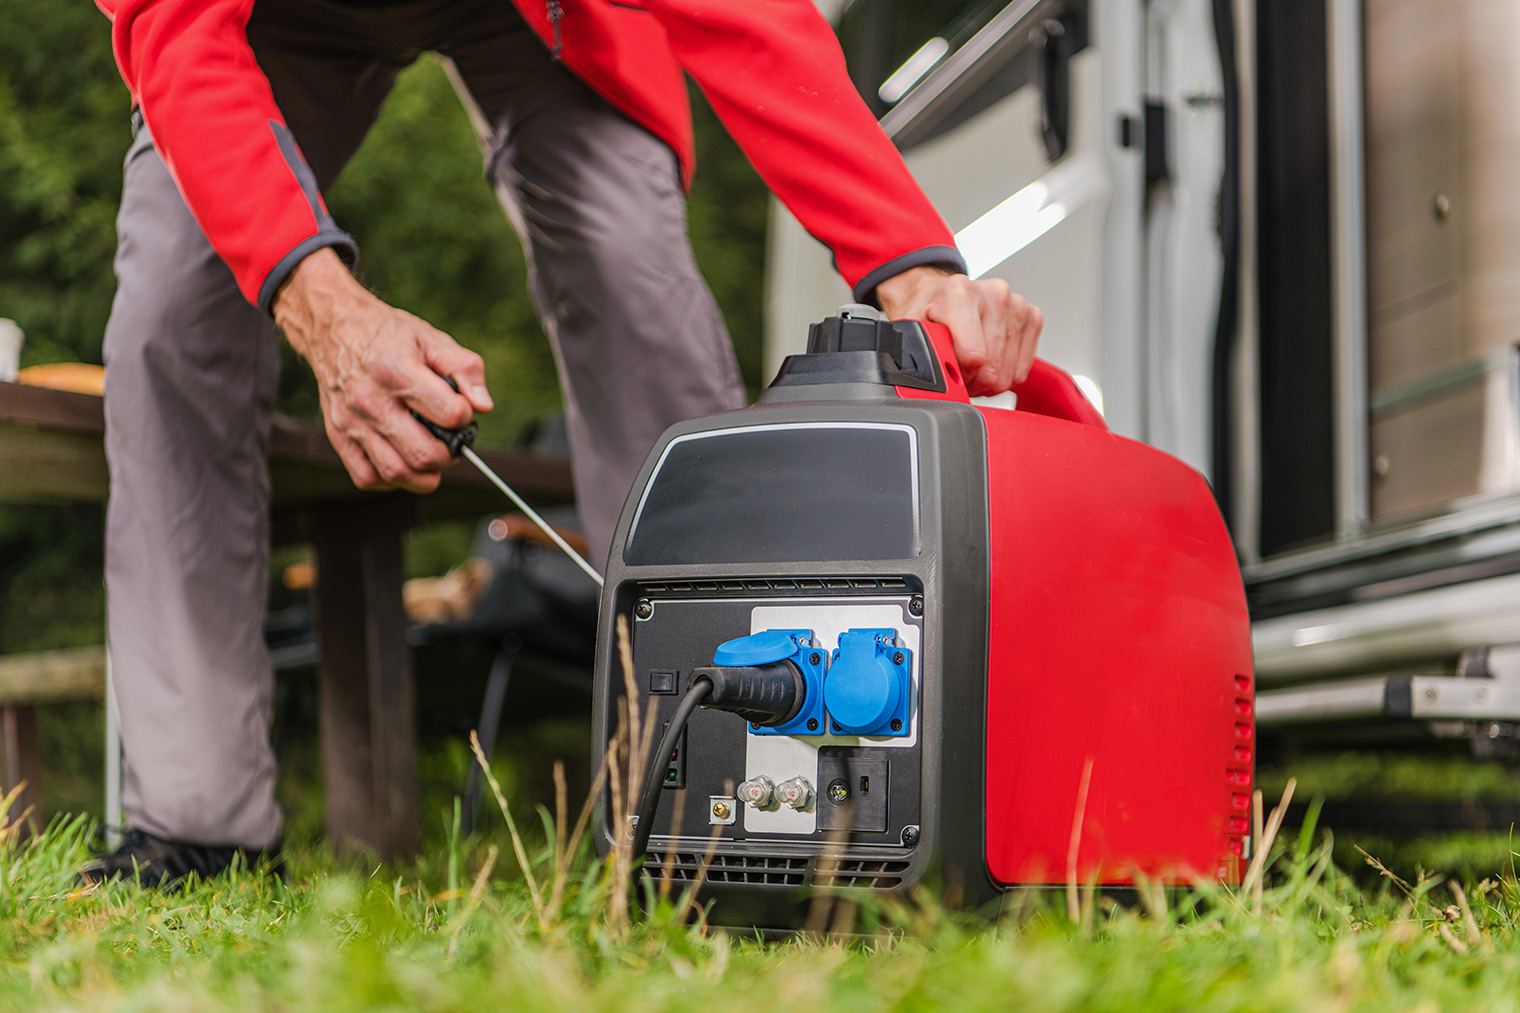 Портативный инверторный генератор можно возить с собой в багажнике и использовать для туристического лагеря. Фотография: Virrage Images / Shutterstock